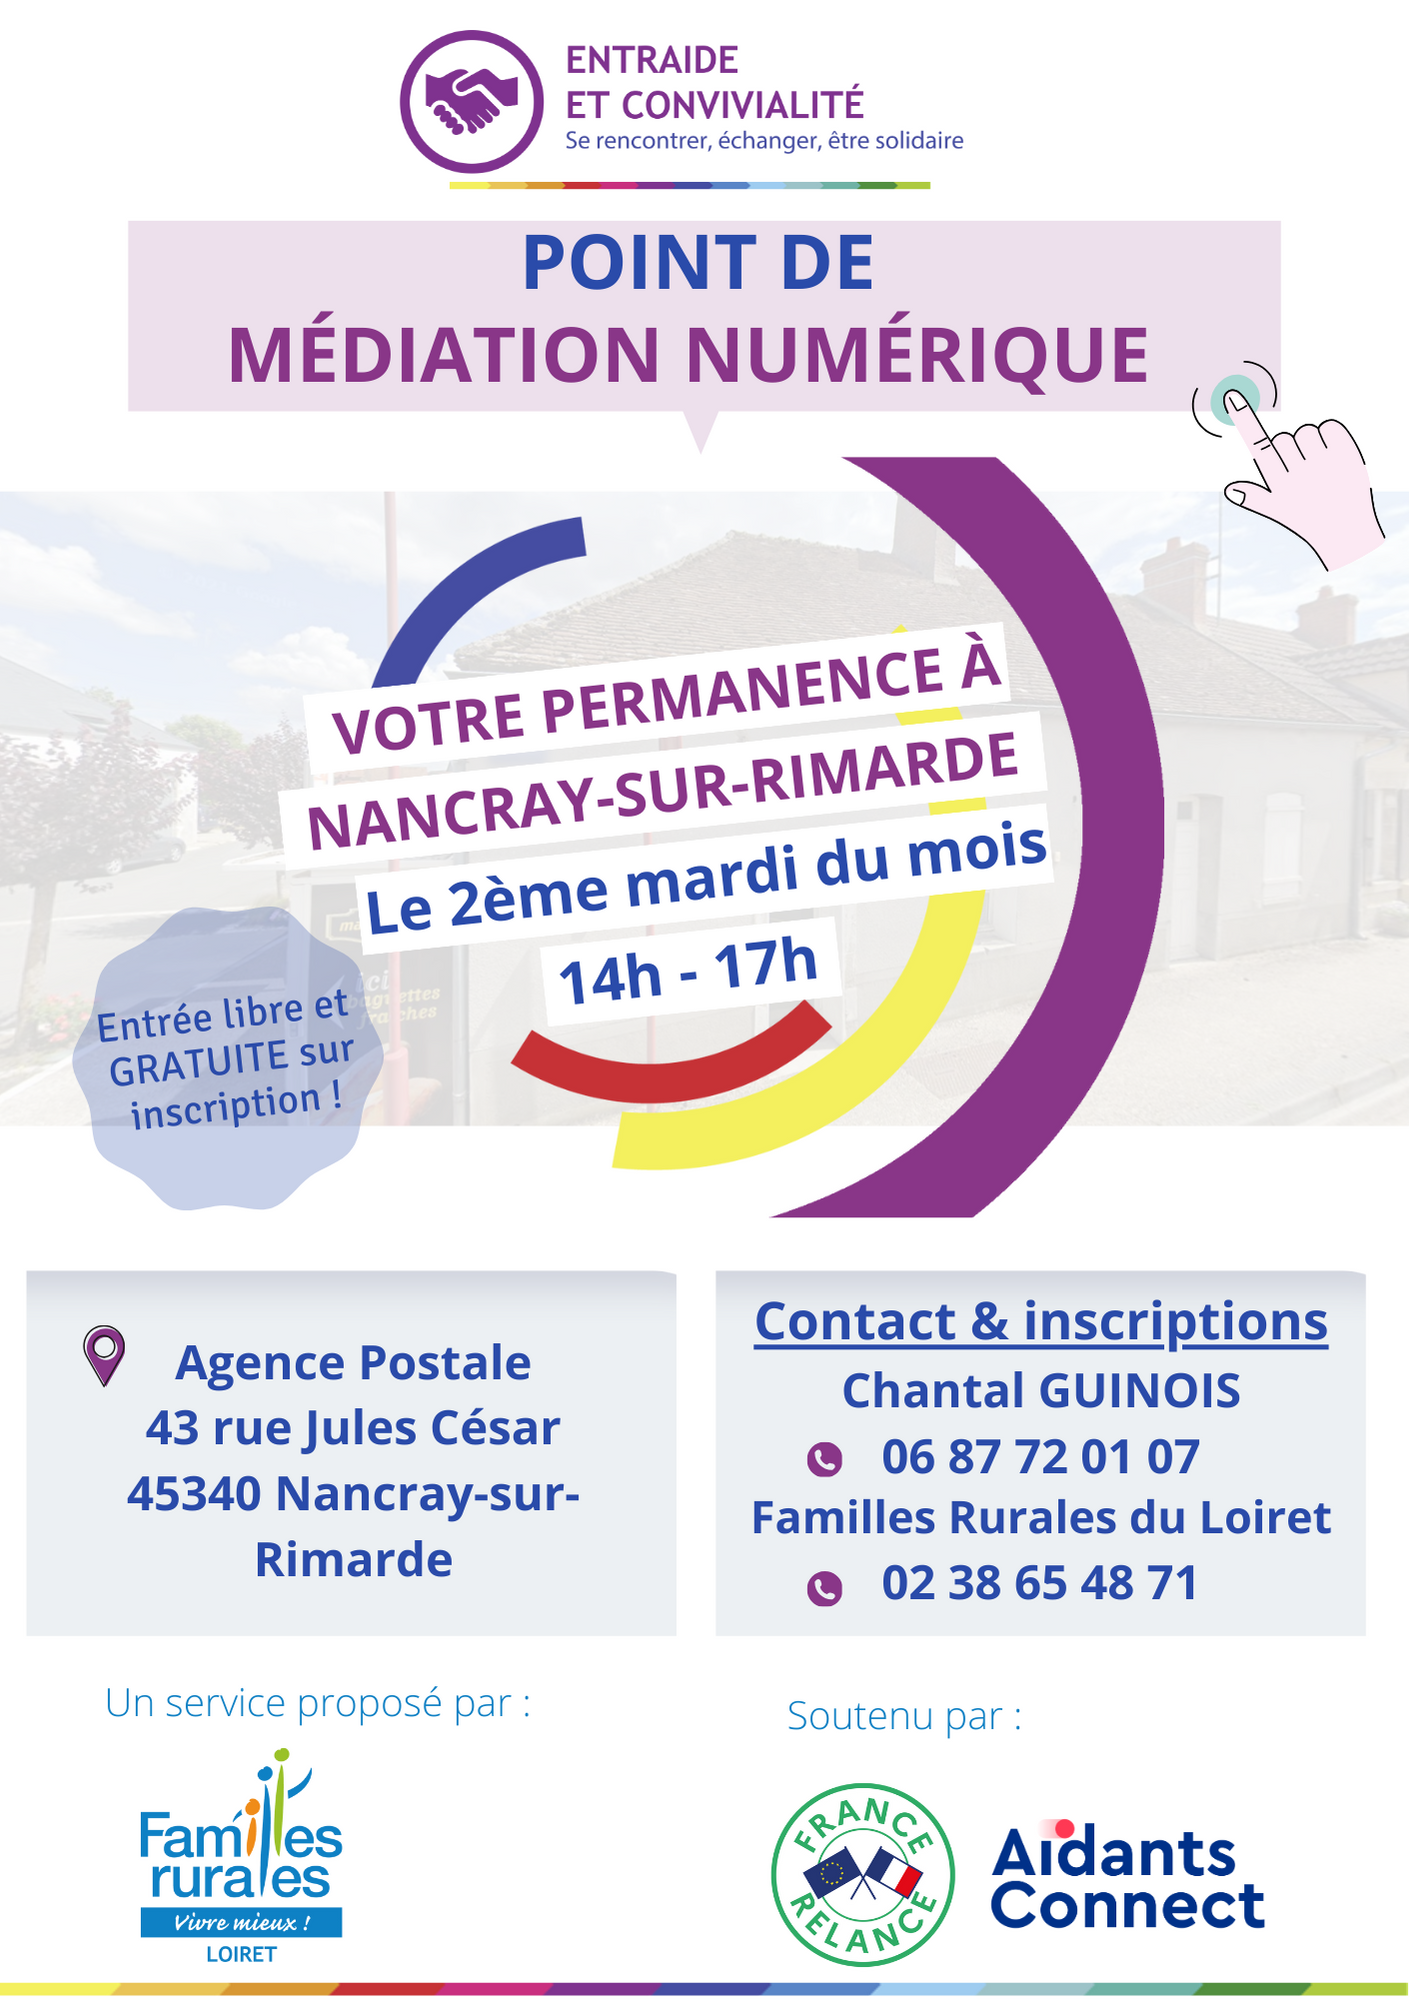 PMN Nancray-sur-Rimarde dates 2024 atelier numérique